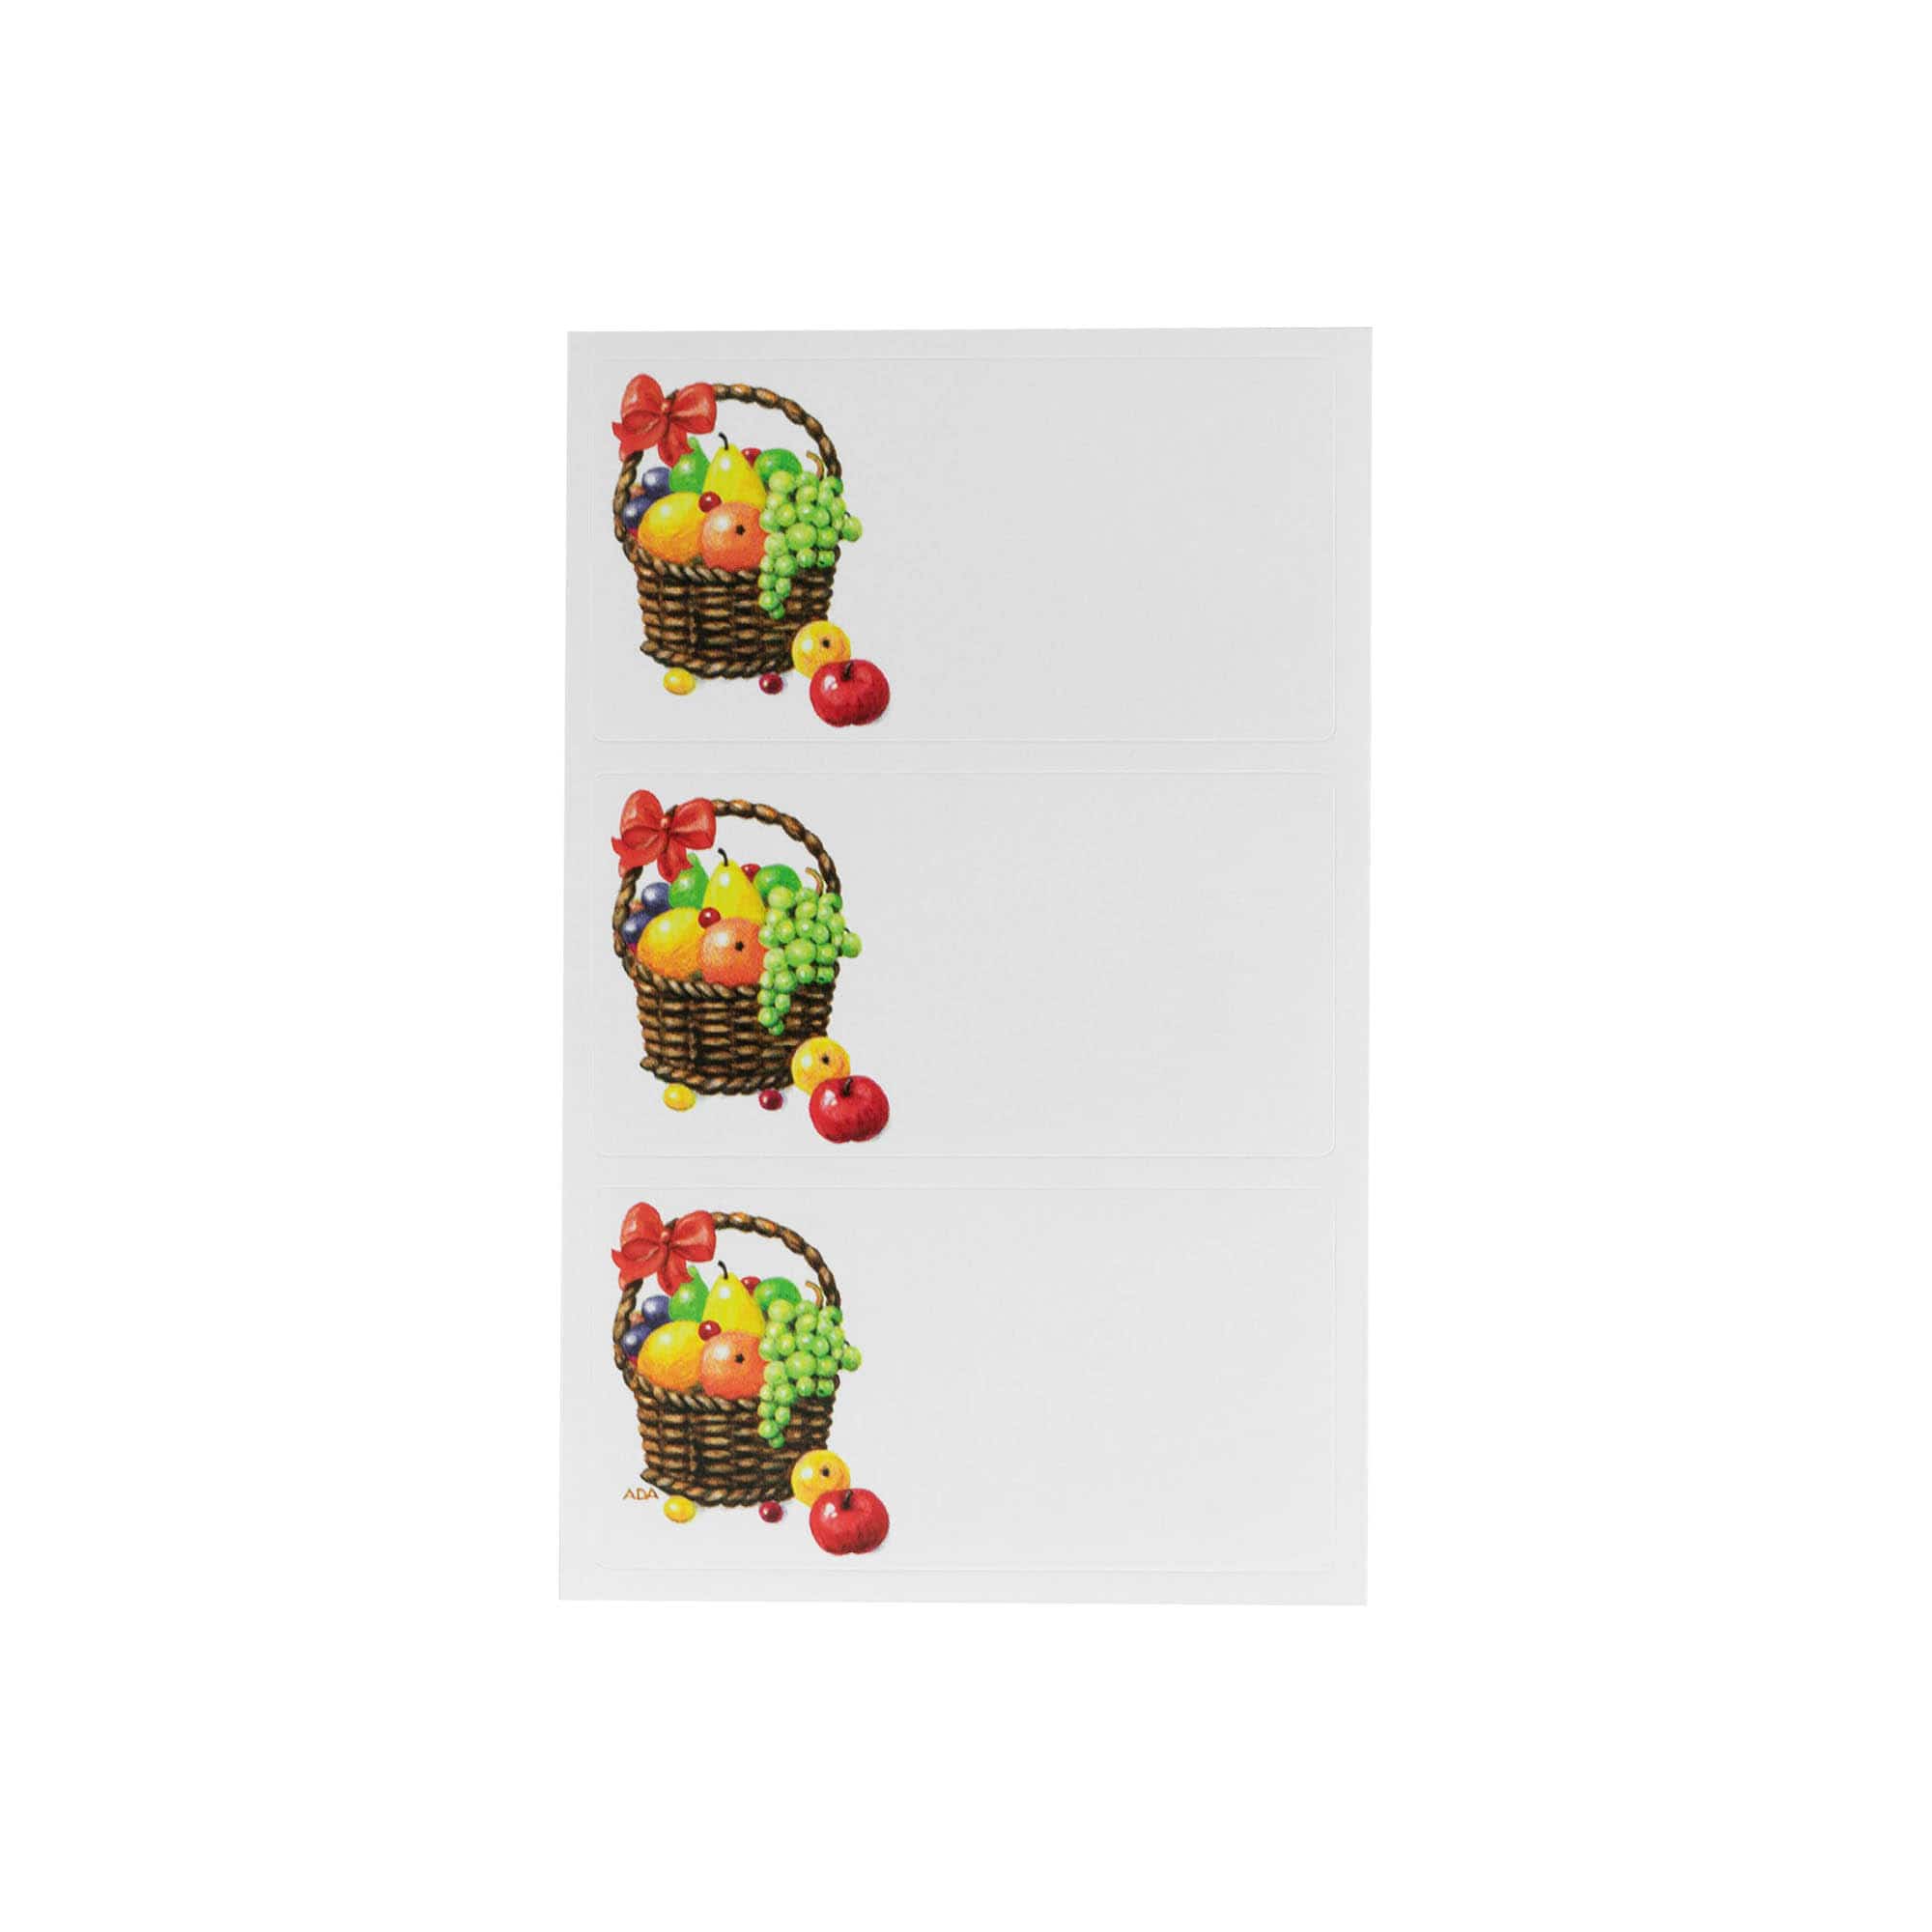 Účelové štítky 'Ovocný koš', obdélníkové, papír, barevné